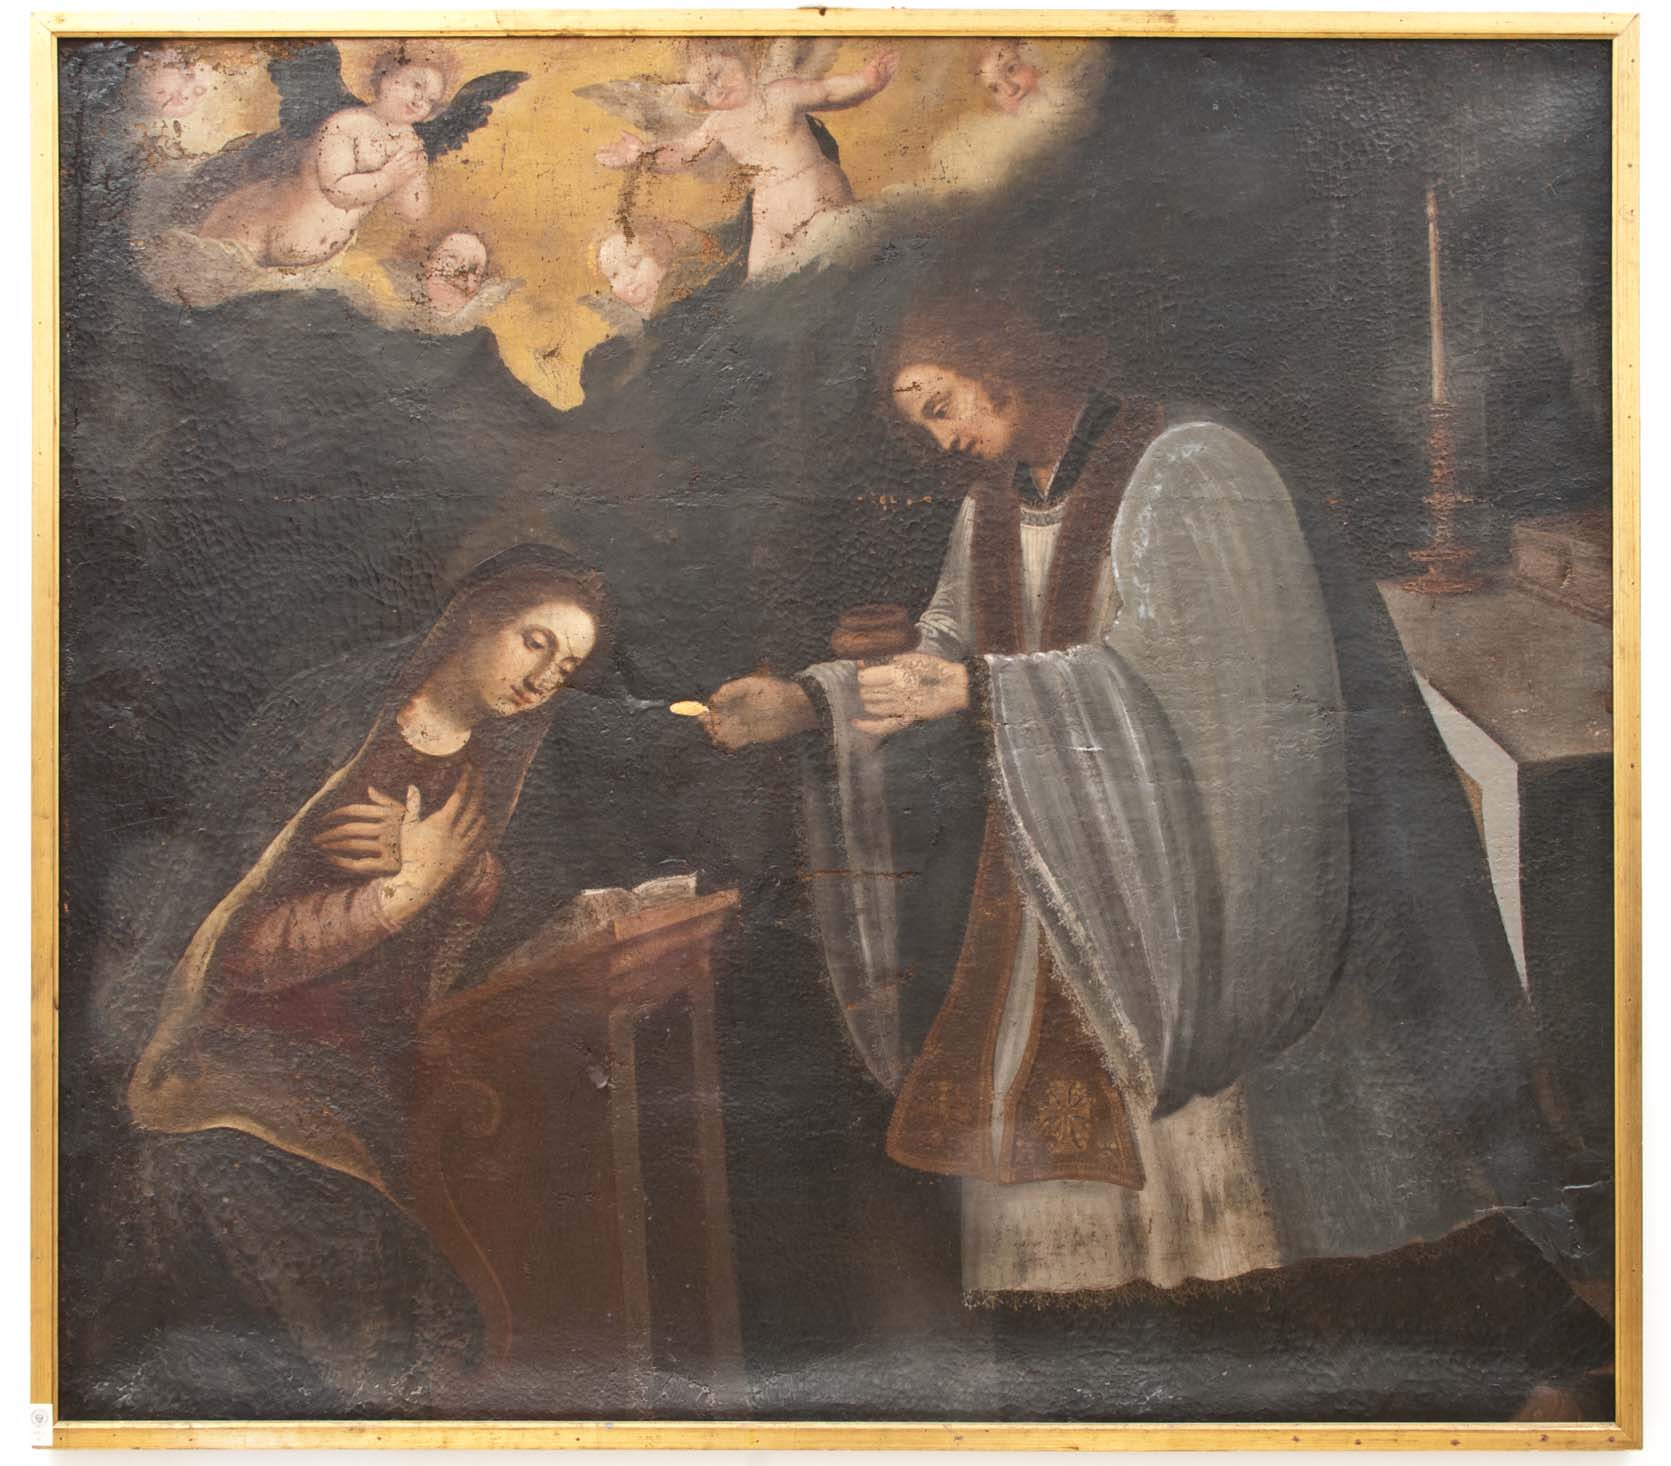 COMUNIONE DI MARIA VERGINE (dipinto - dipinto su tela, opera isolata) di Ignoto (maniera) - ambito Italia meridionale (XVIII)